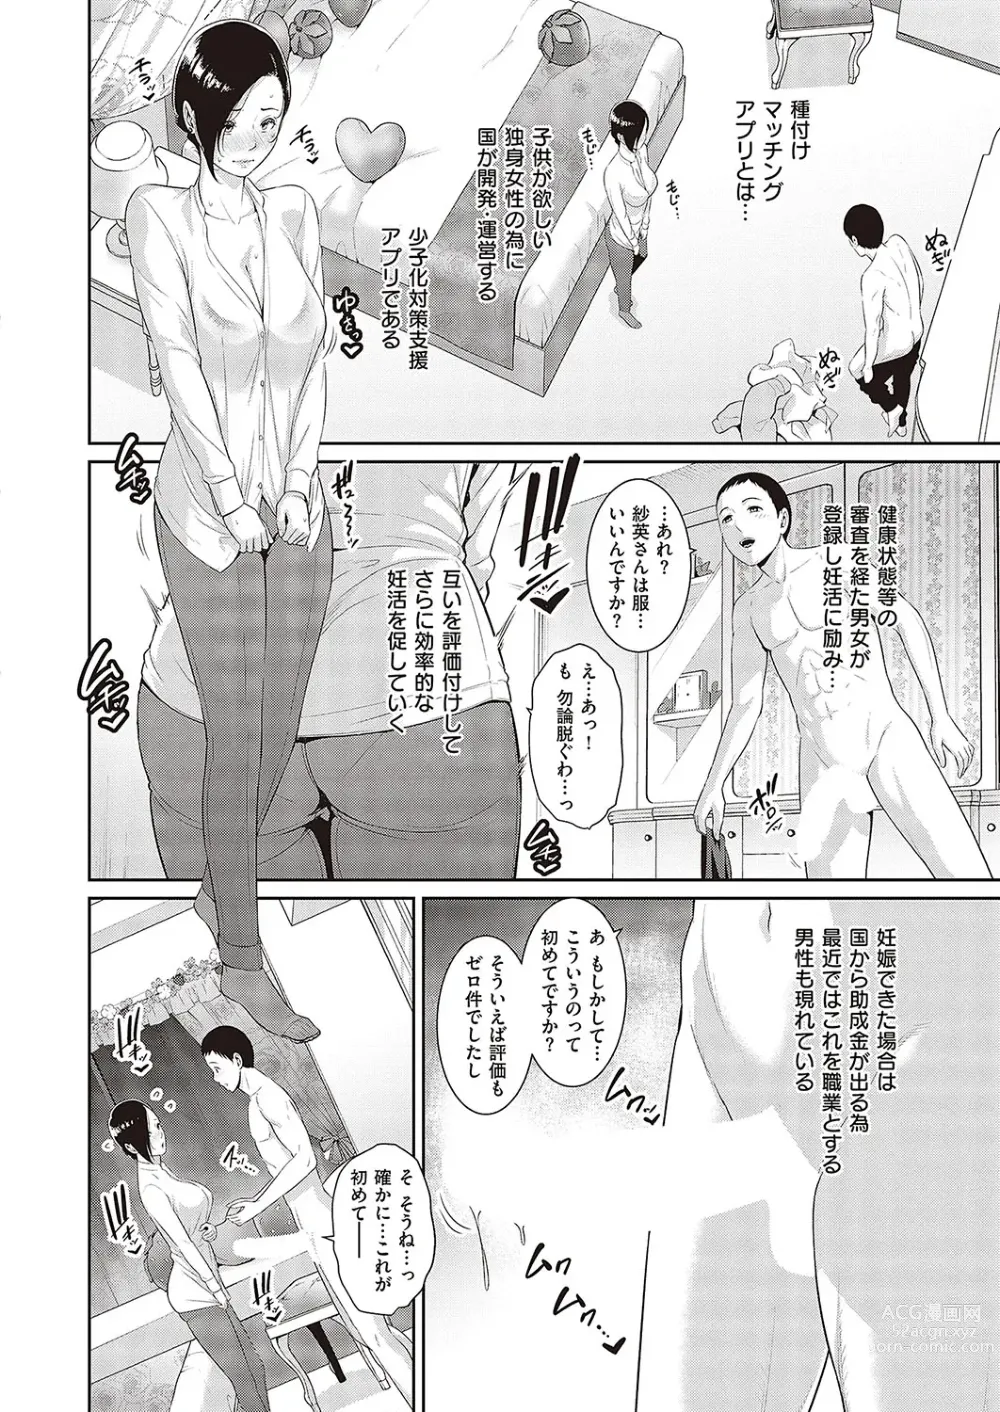 Page 4 of manga 種付けマッチングアプリ Cap.1-2